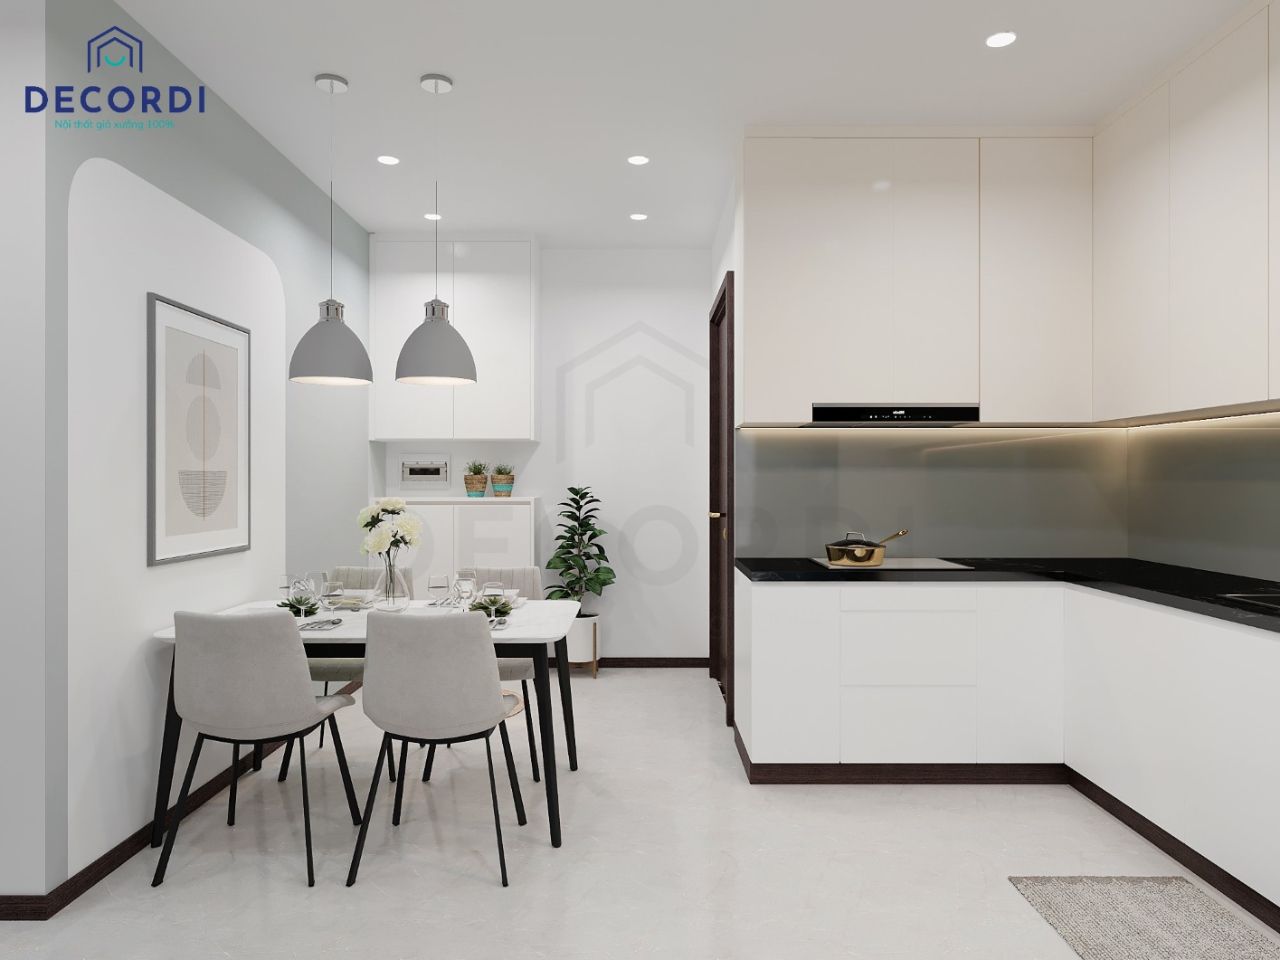 Tổng thể không gian phòng bếp đầy đủ tiện nghi với hệ tủ bếp cao đụng trần giúp tăng diện tích sử dụng